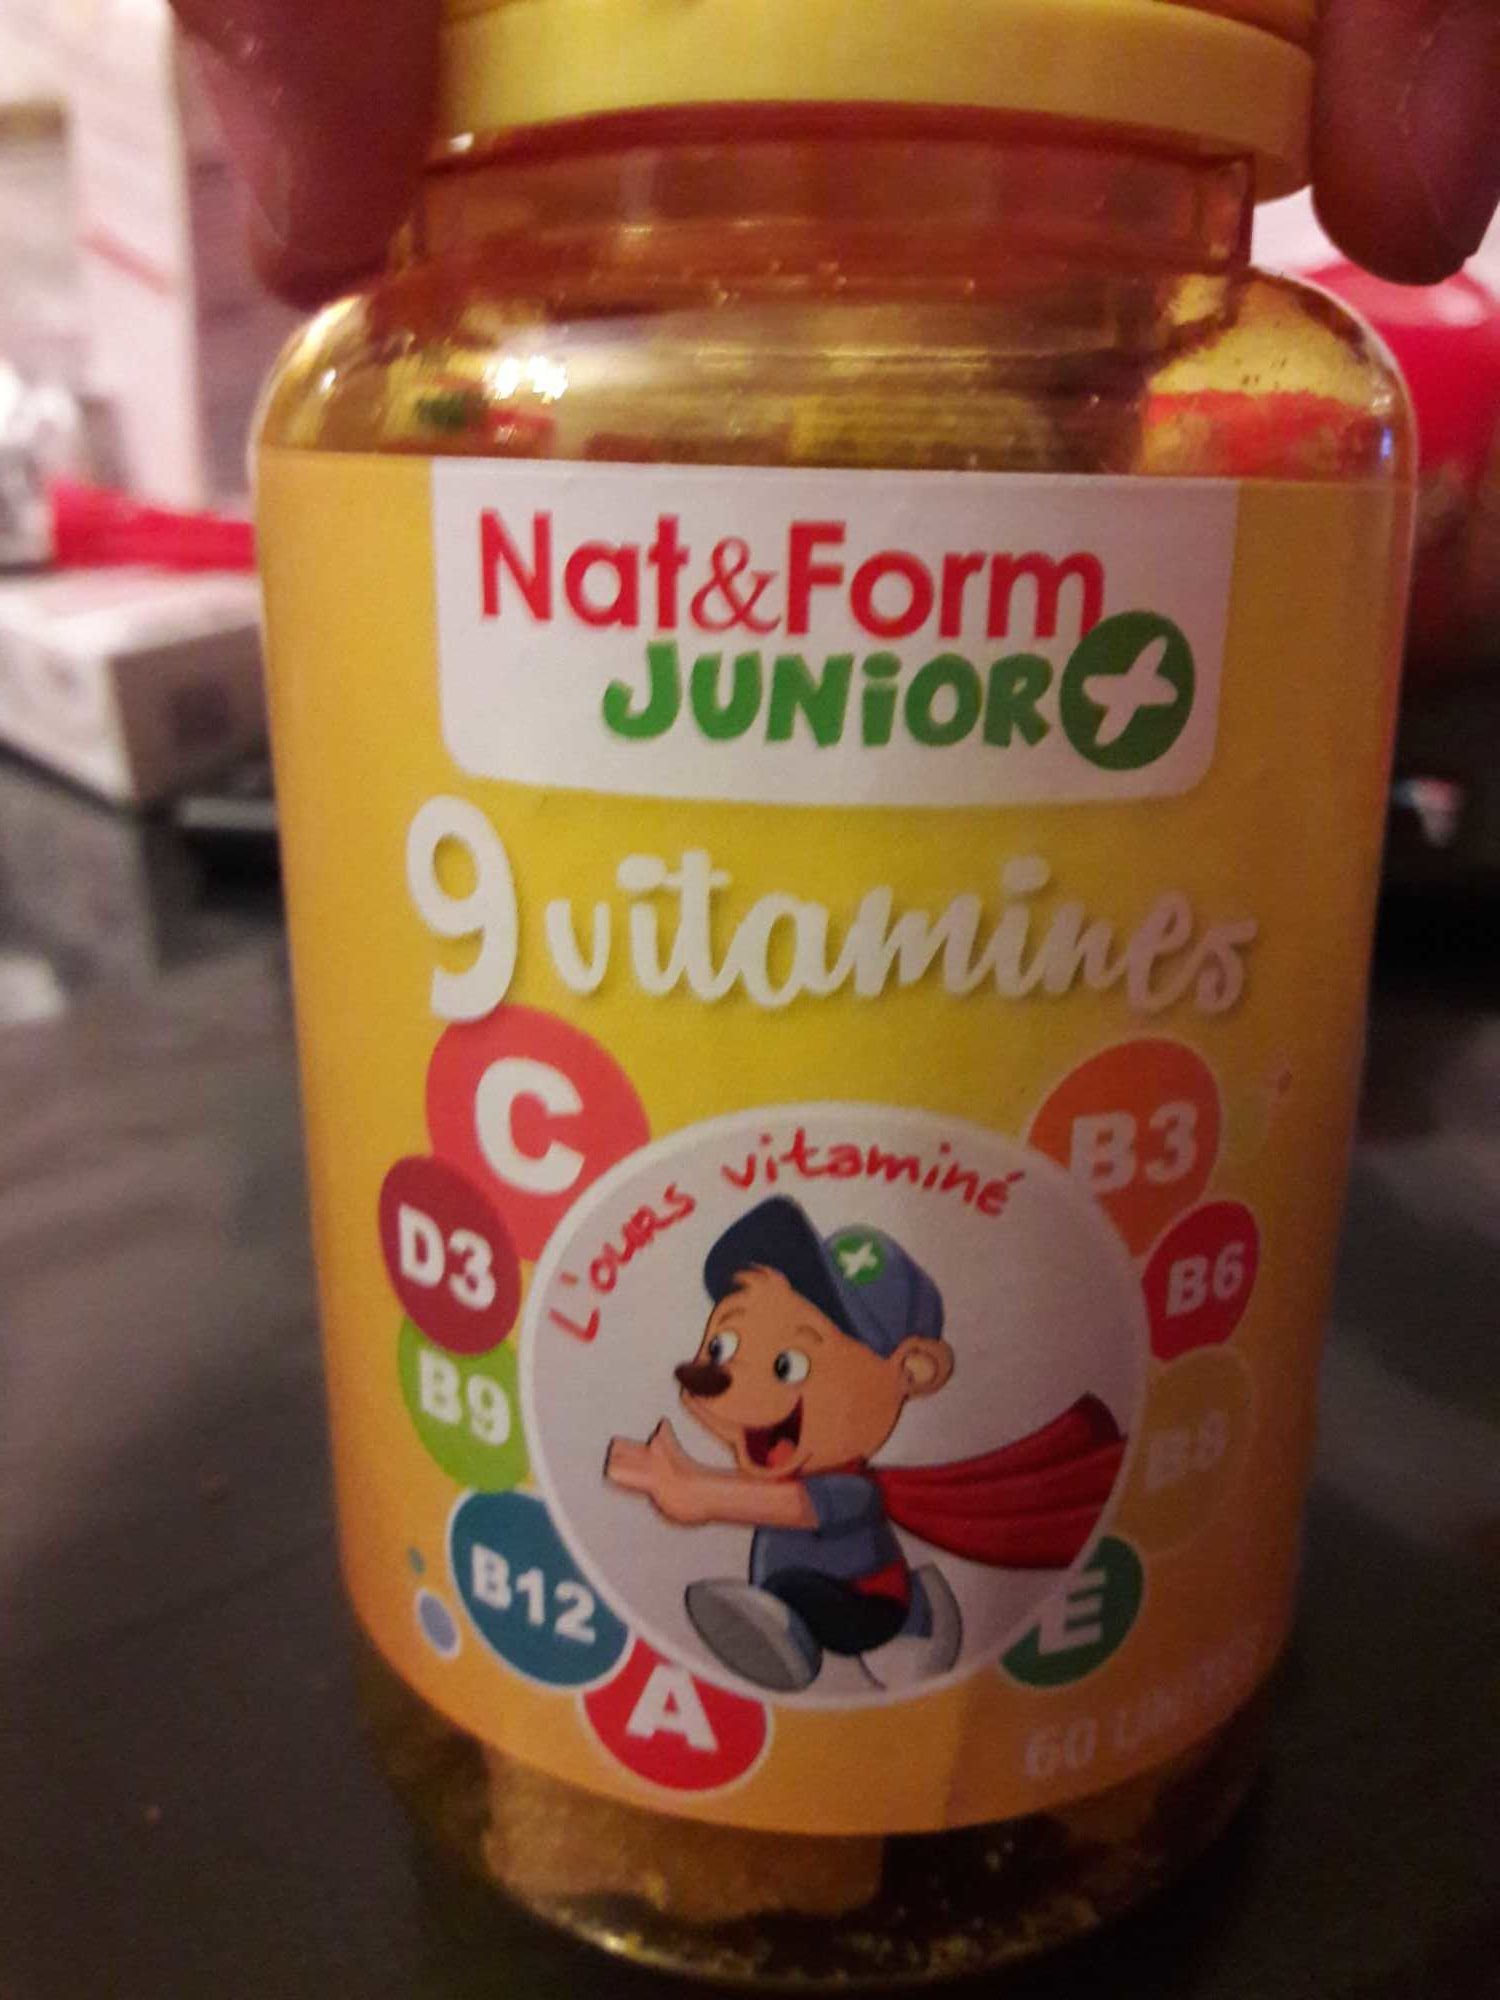 9 Vitamines Goût orange, citron, framboise - Product - fr